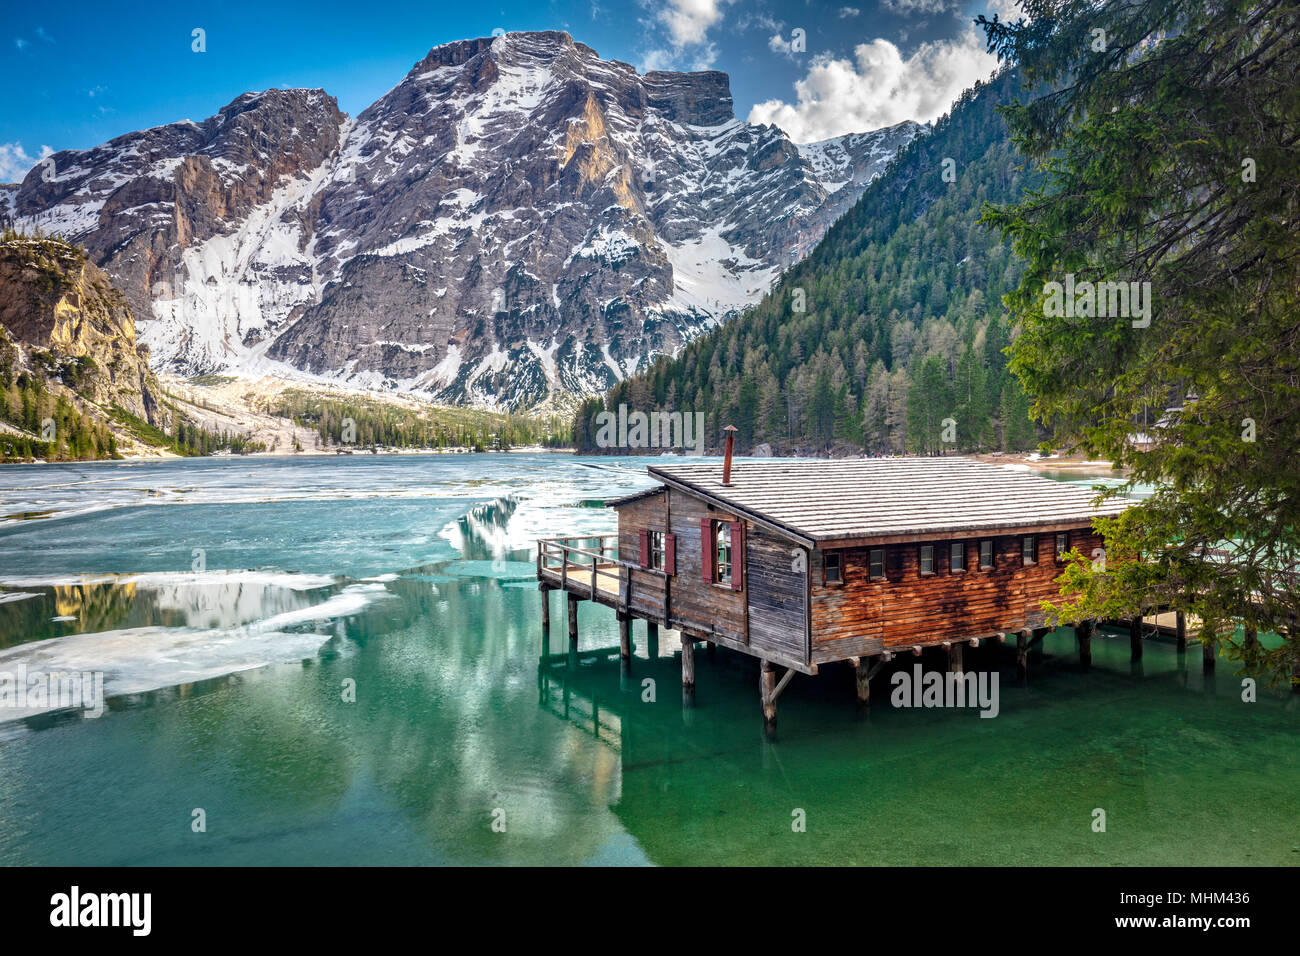 Vista panoramica del famoso lago di Braies in italia Foto Stock